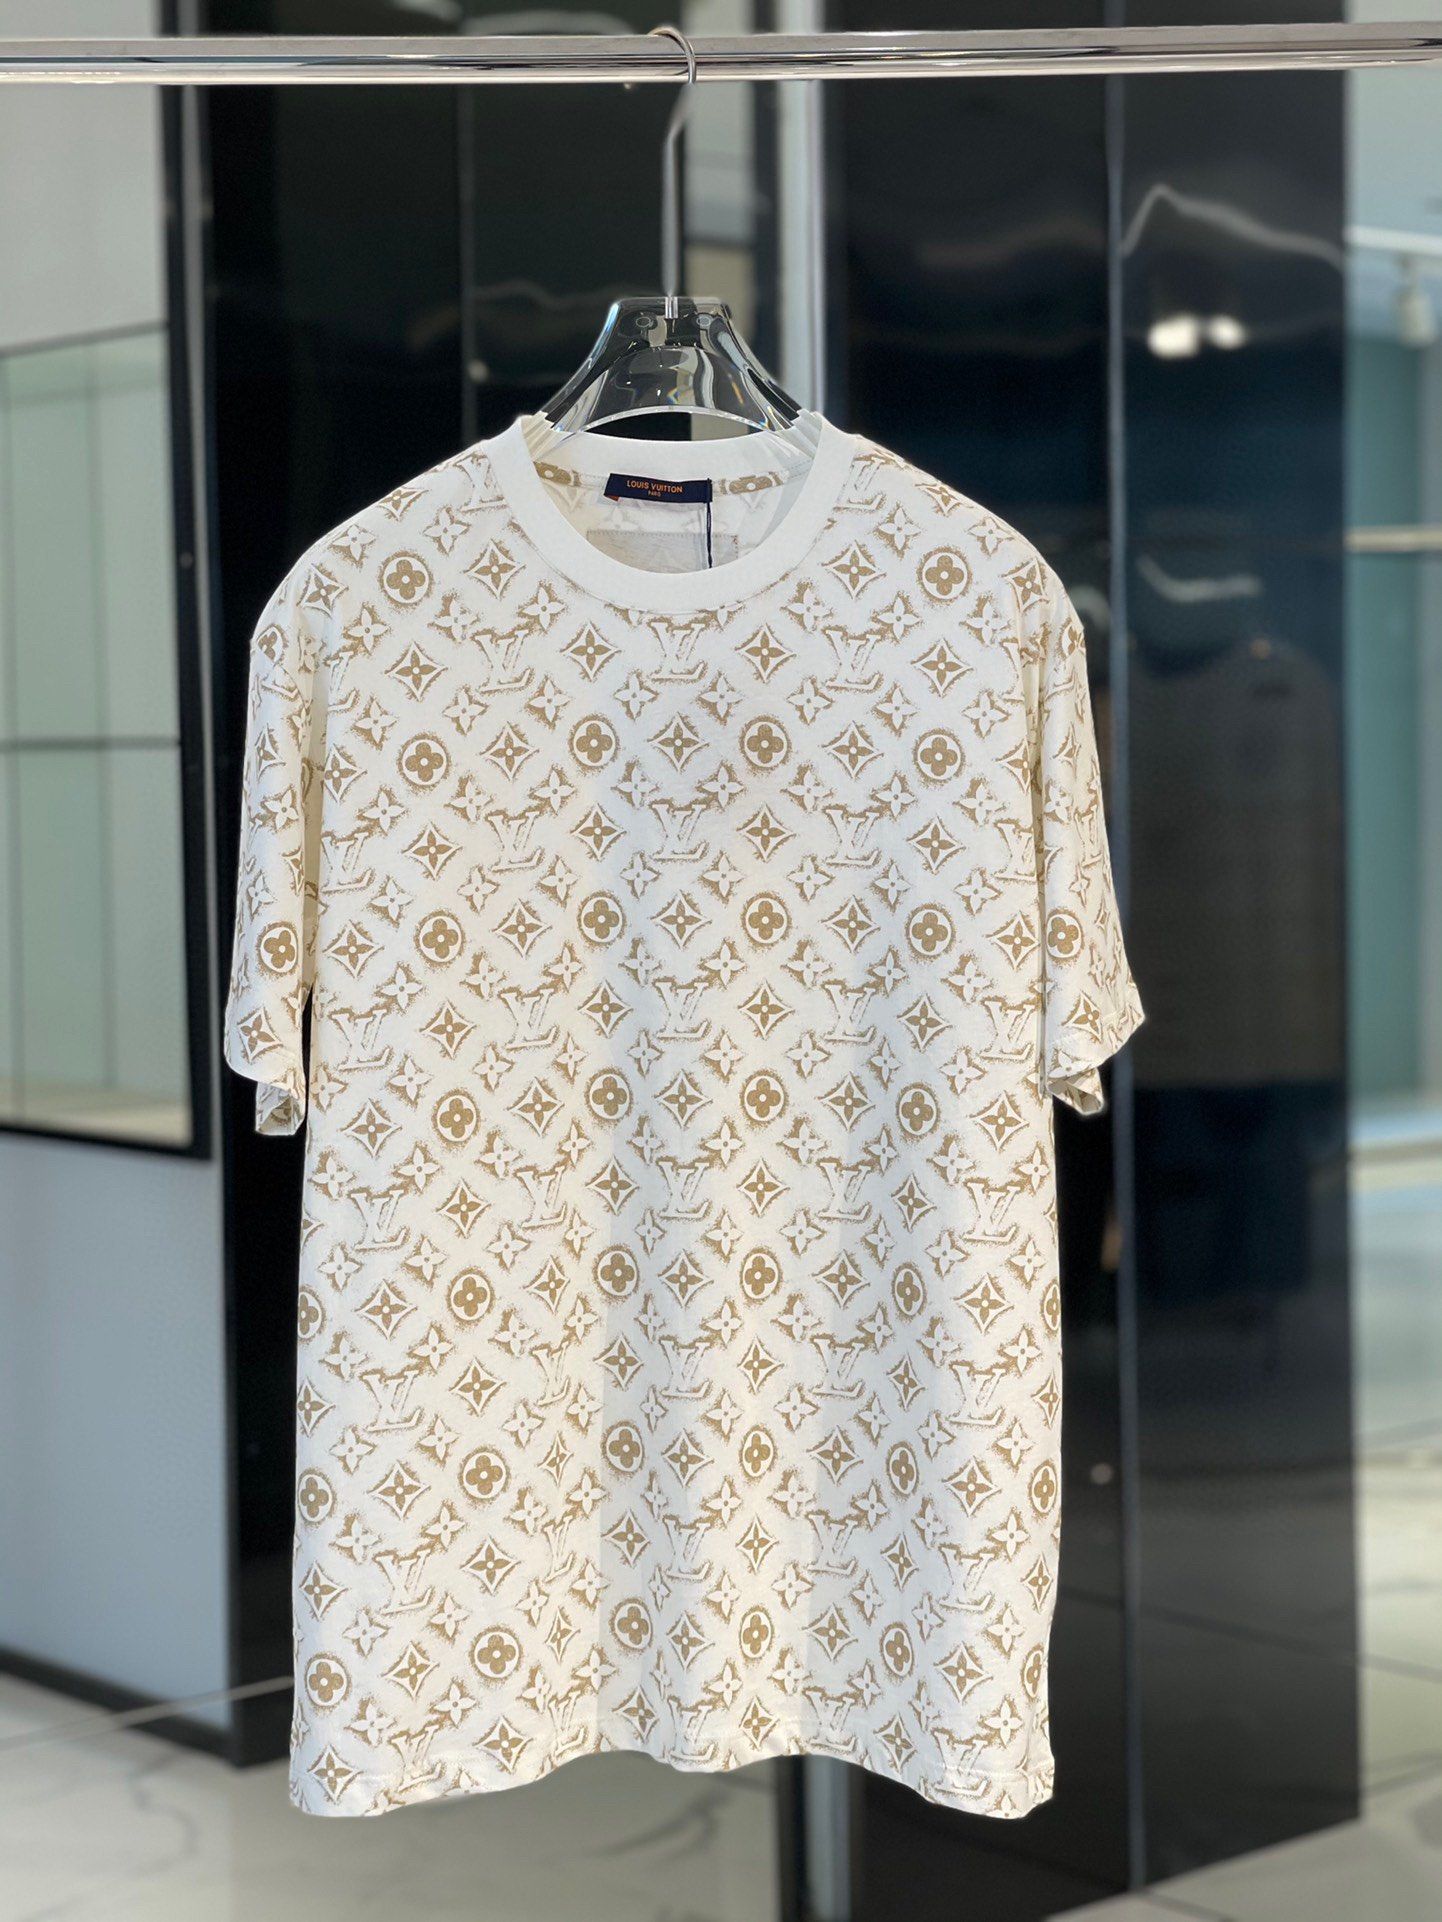 Louis Vuitton Monogram Cotton T-Shirt